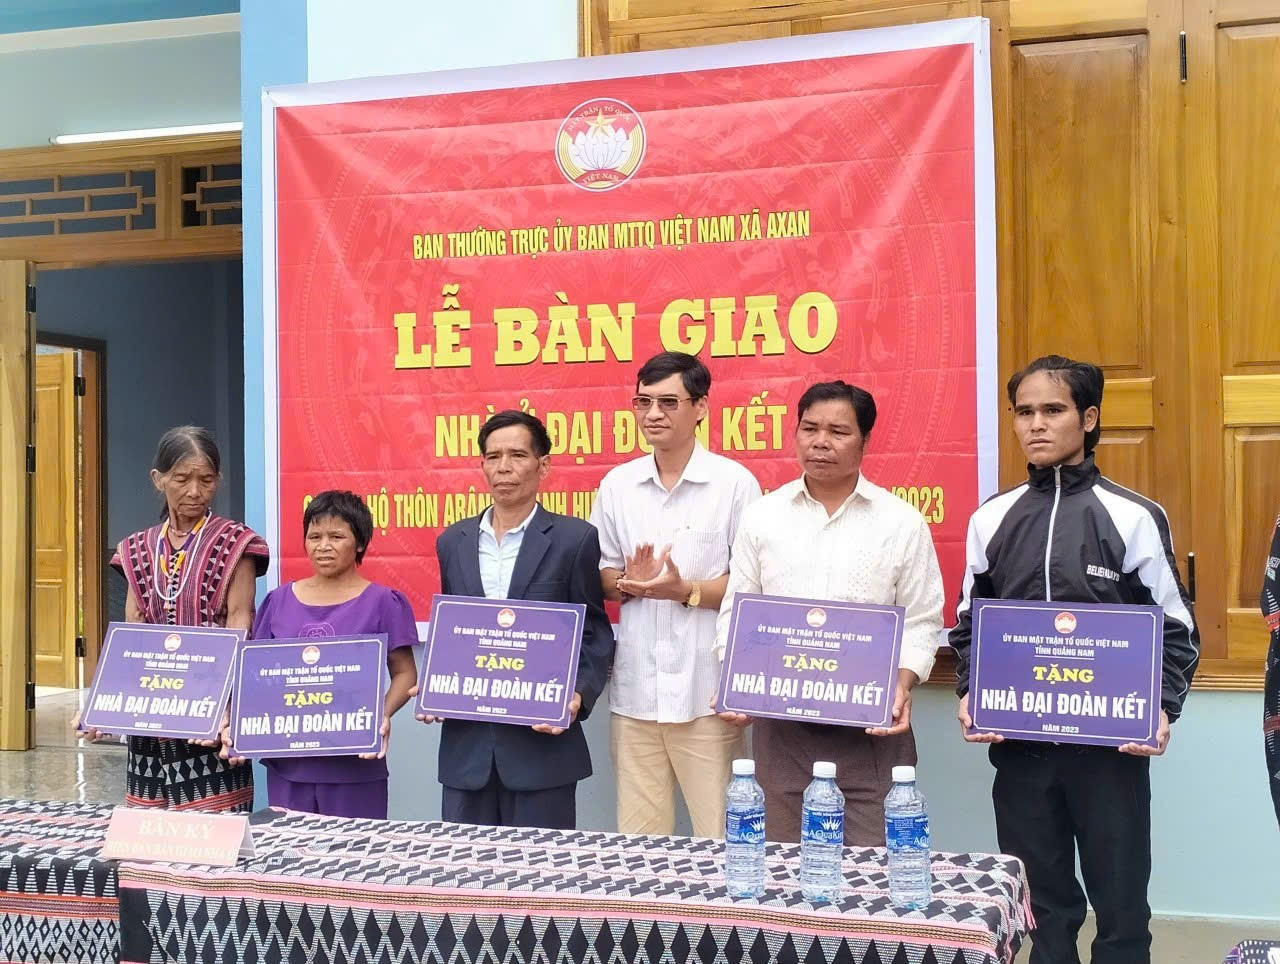 Ông Briu Quân - Chủ tịch Ủy ban MTTQ Việt Nam huyện Tây Giang (thứ 3, từ phải sang) trao bảng hiệu các ngôi nhà cho người dân. Ảnh: L.T